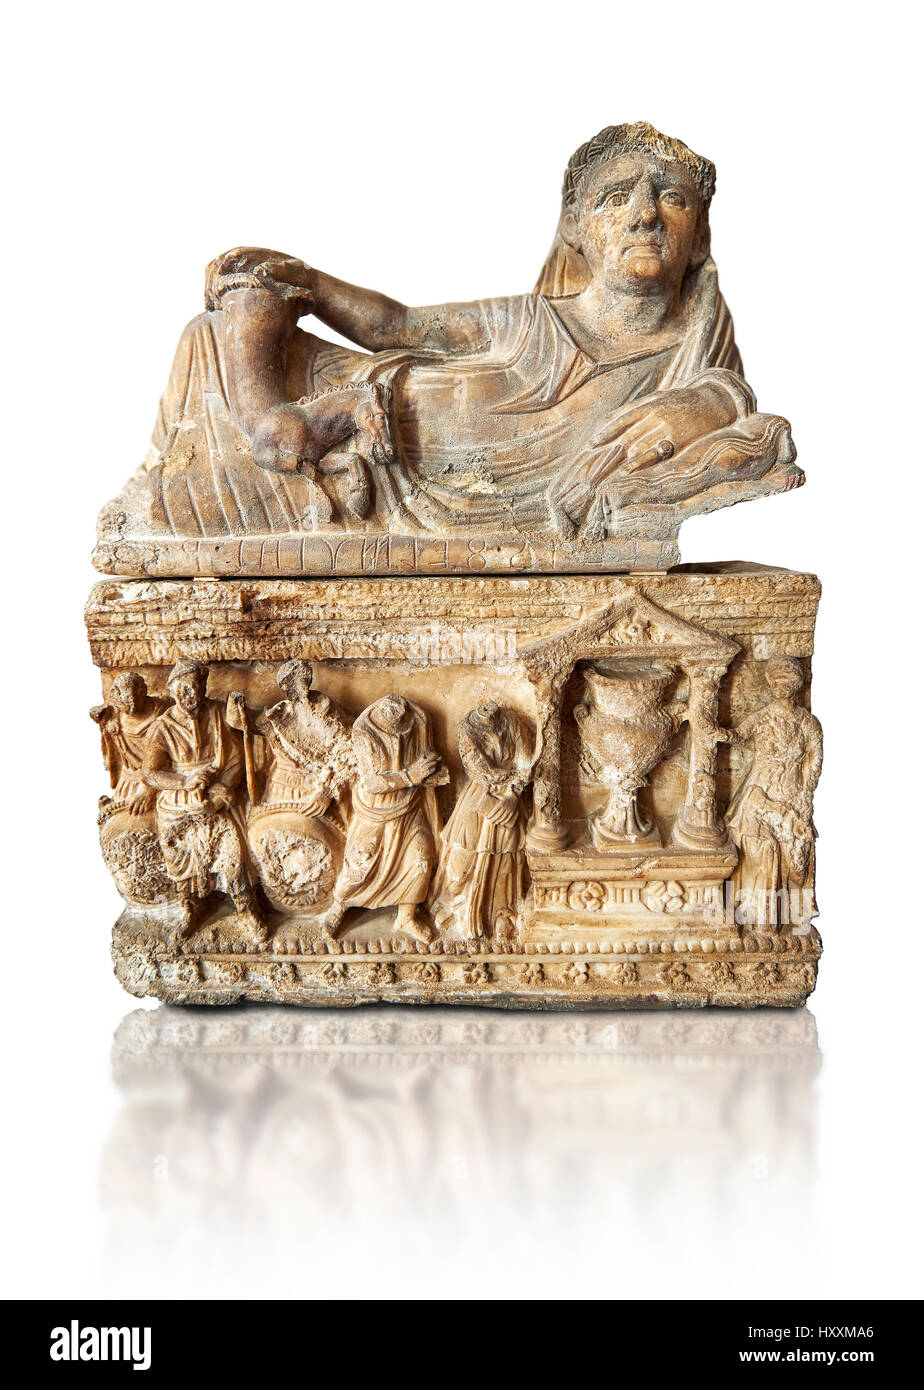 Etrusca stile ellenistico, cineraria funreary, urn , inv n. 5774, il Museo Archeologico Nazionale di Firenze, Italia , sfondo bianco Foto Stock